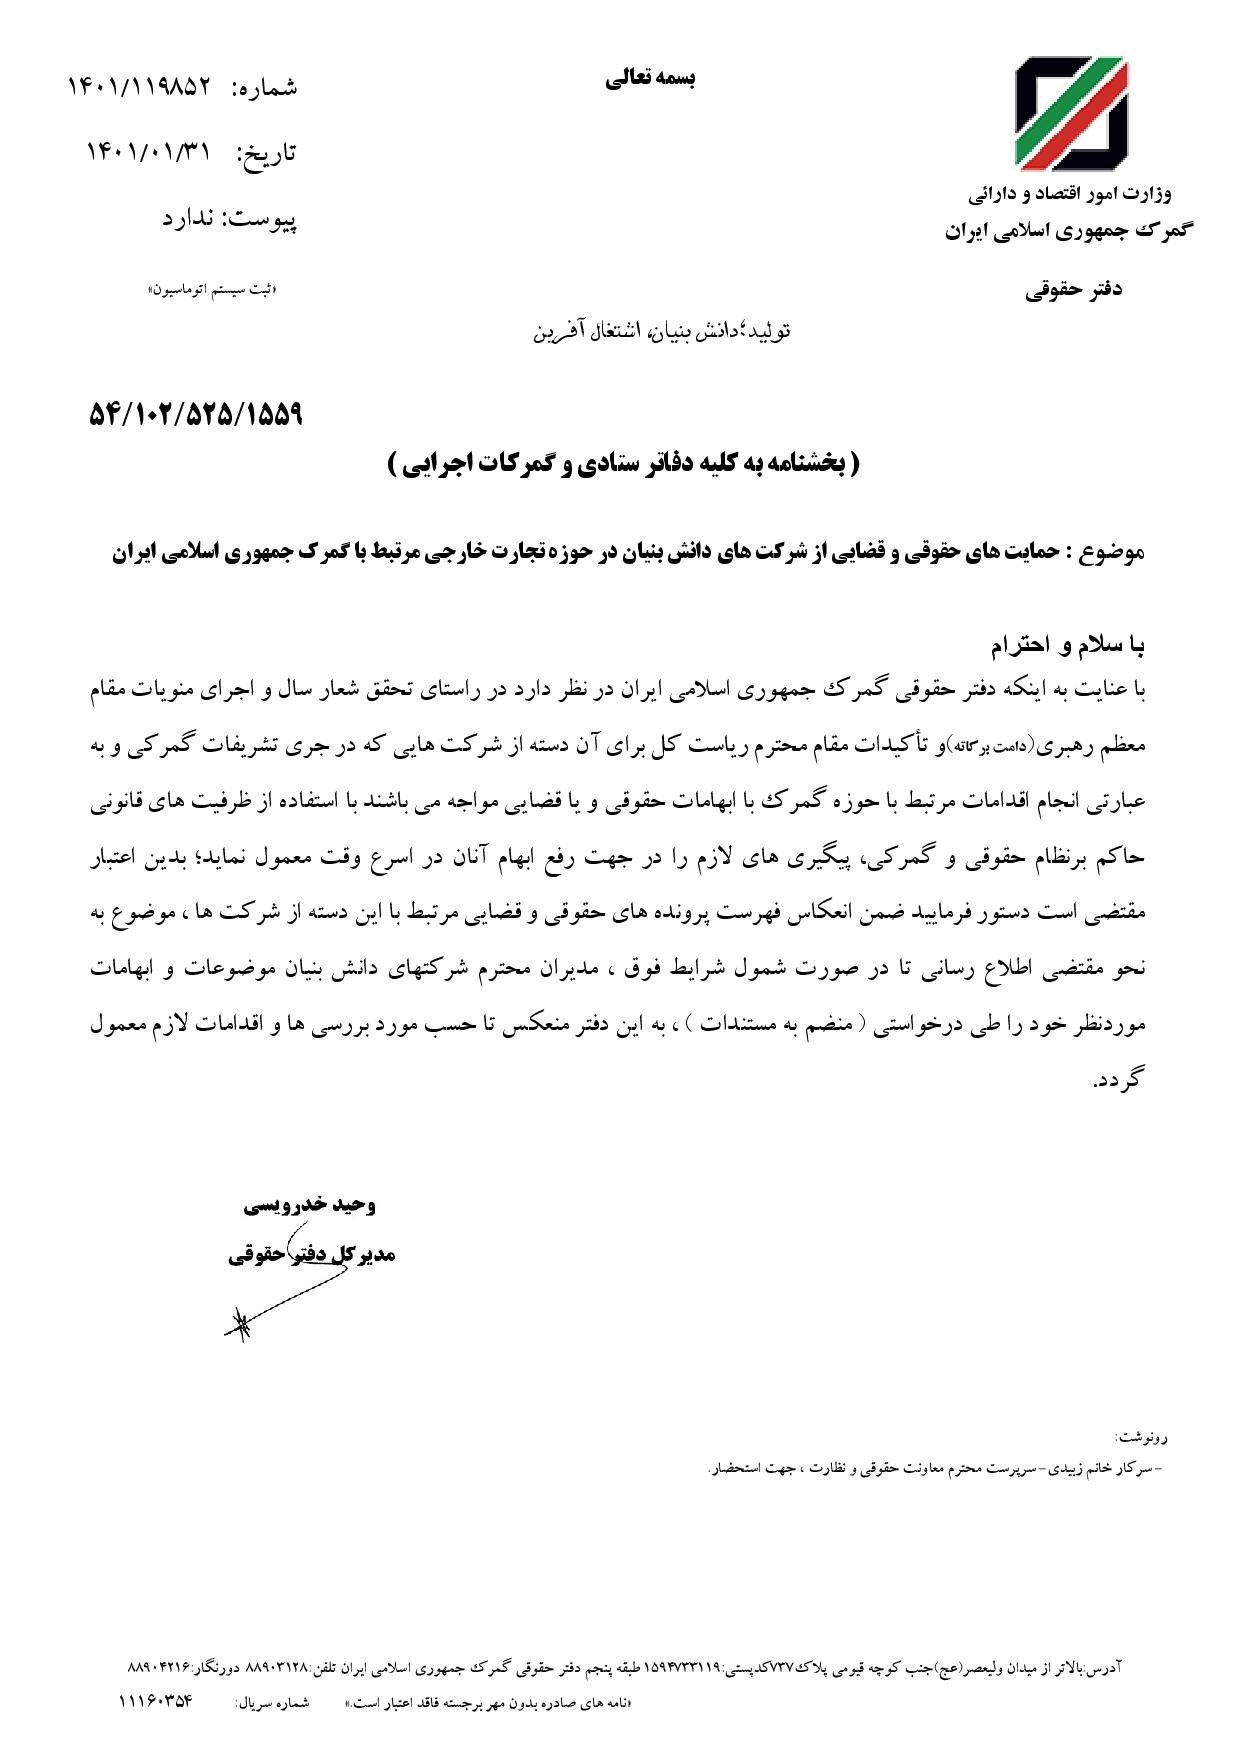 بخشنامه حمایت های حقوقی و قضایی از شرکت های دانش بنیان در حوزه تجارت خارجی مرتبط با گمرک جمهوری اسلامی ایران 1401/01/31